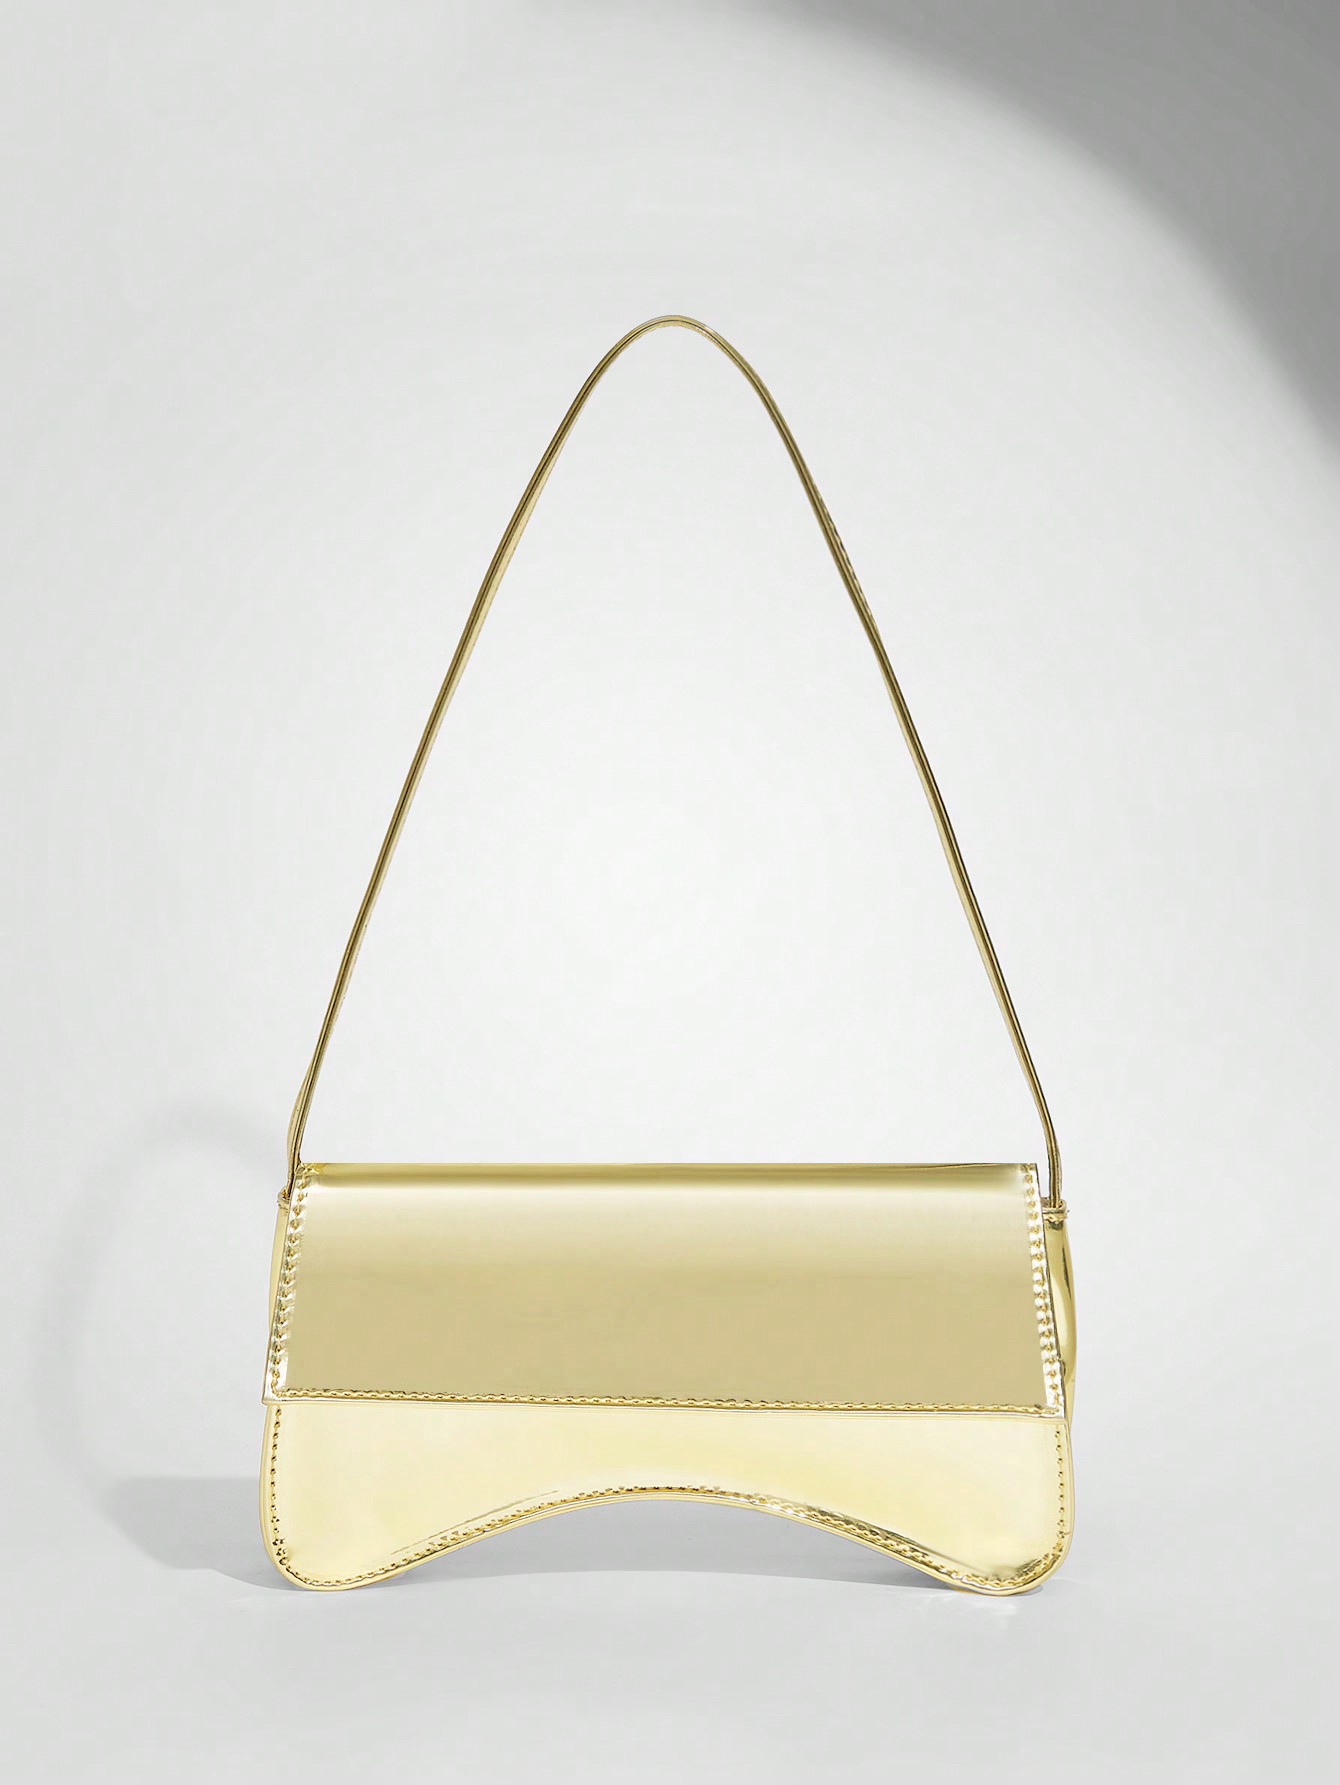 SHEIN BAE Женская модная индивидуальная блестящая сумка-хобо из искусственной кожи золотого цвета с эффектом металлик, золото shein bae блестящая блузка с ромбовидной формой и воротником через шею черный